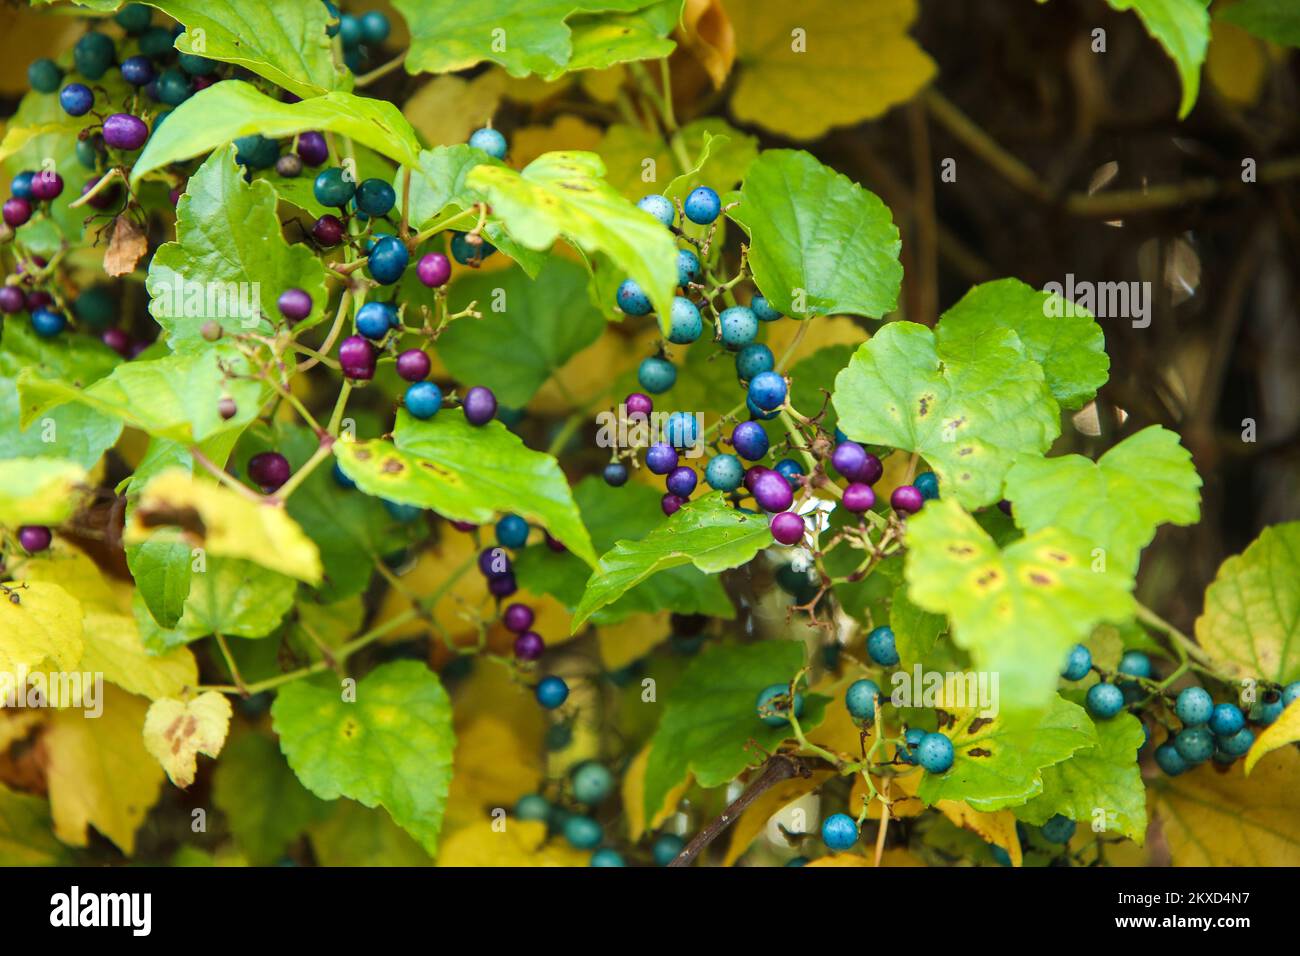 Il dettaglio delle bacche colorate nelle foglie verdi durante l'autunno. Foto Stock